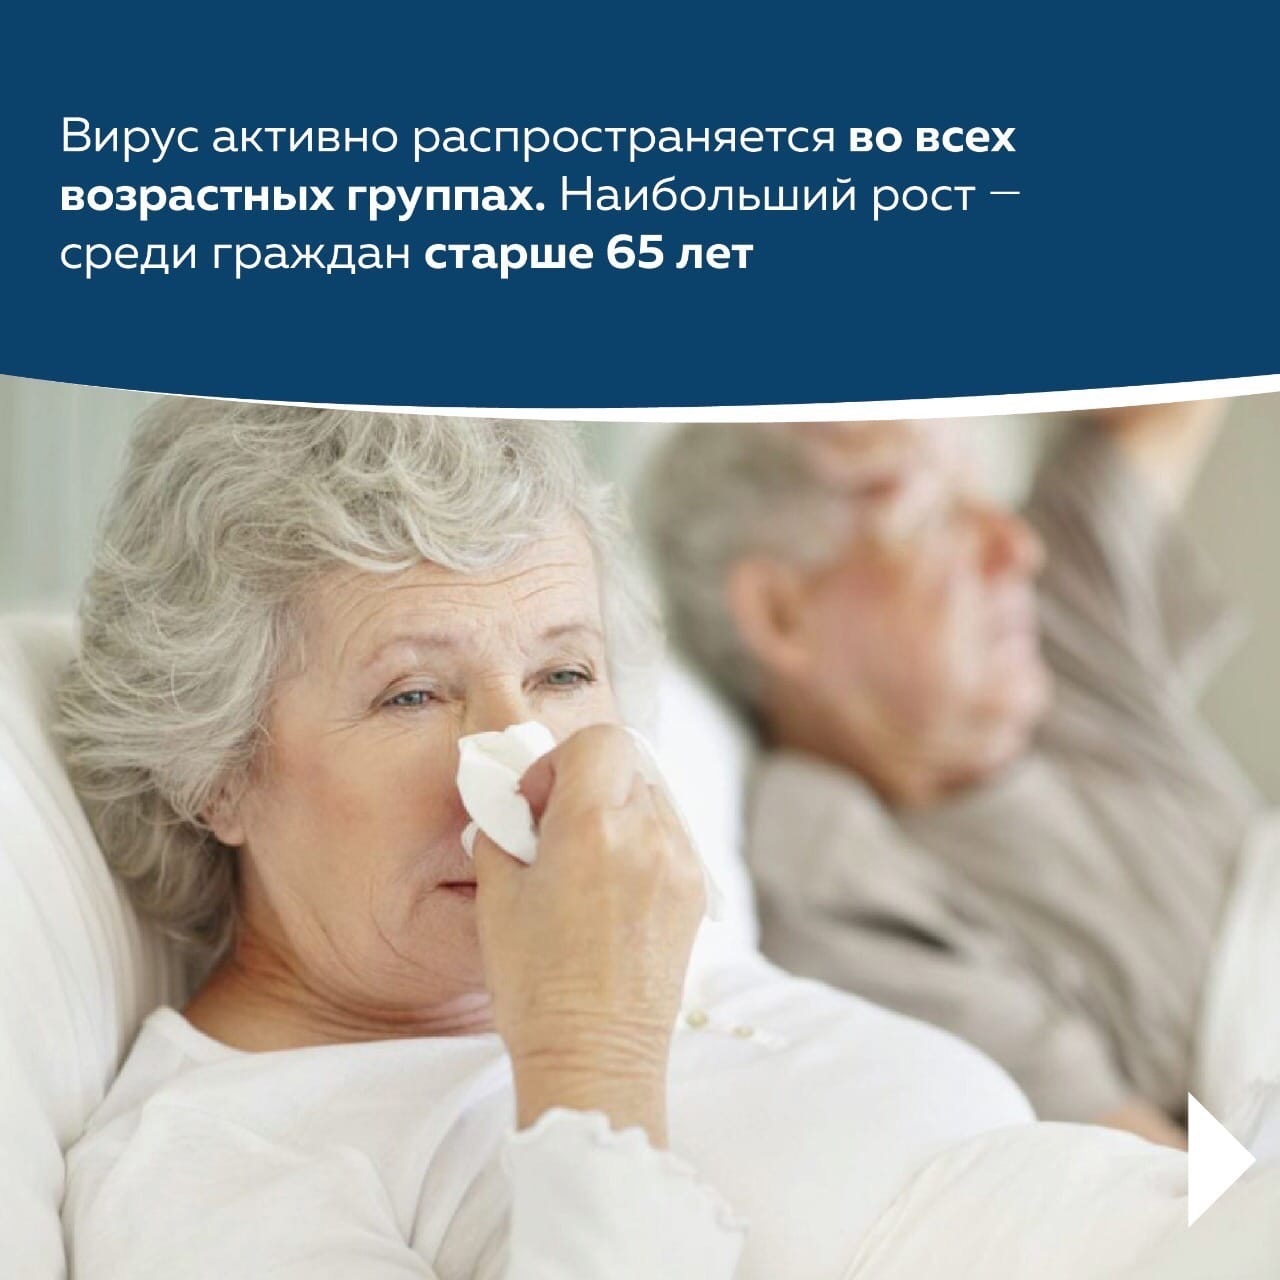 В Башкортостане активно идет кампания по вакцинации от гриппа